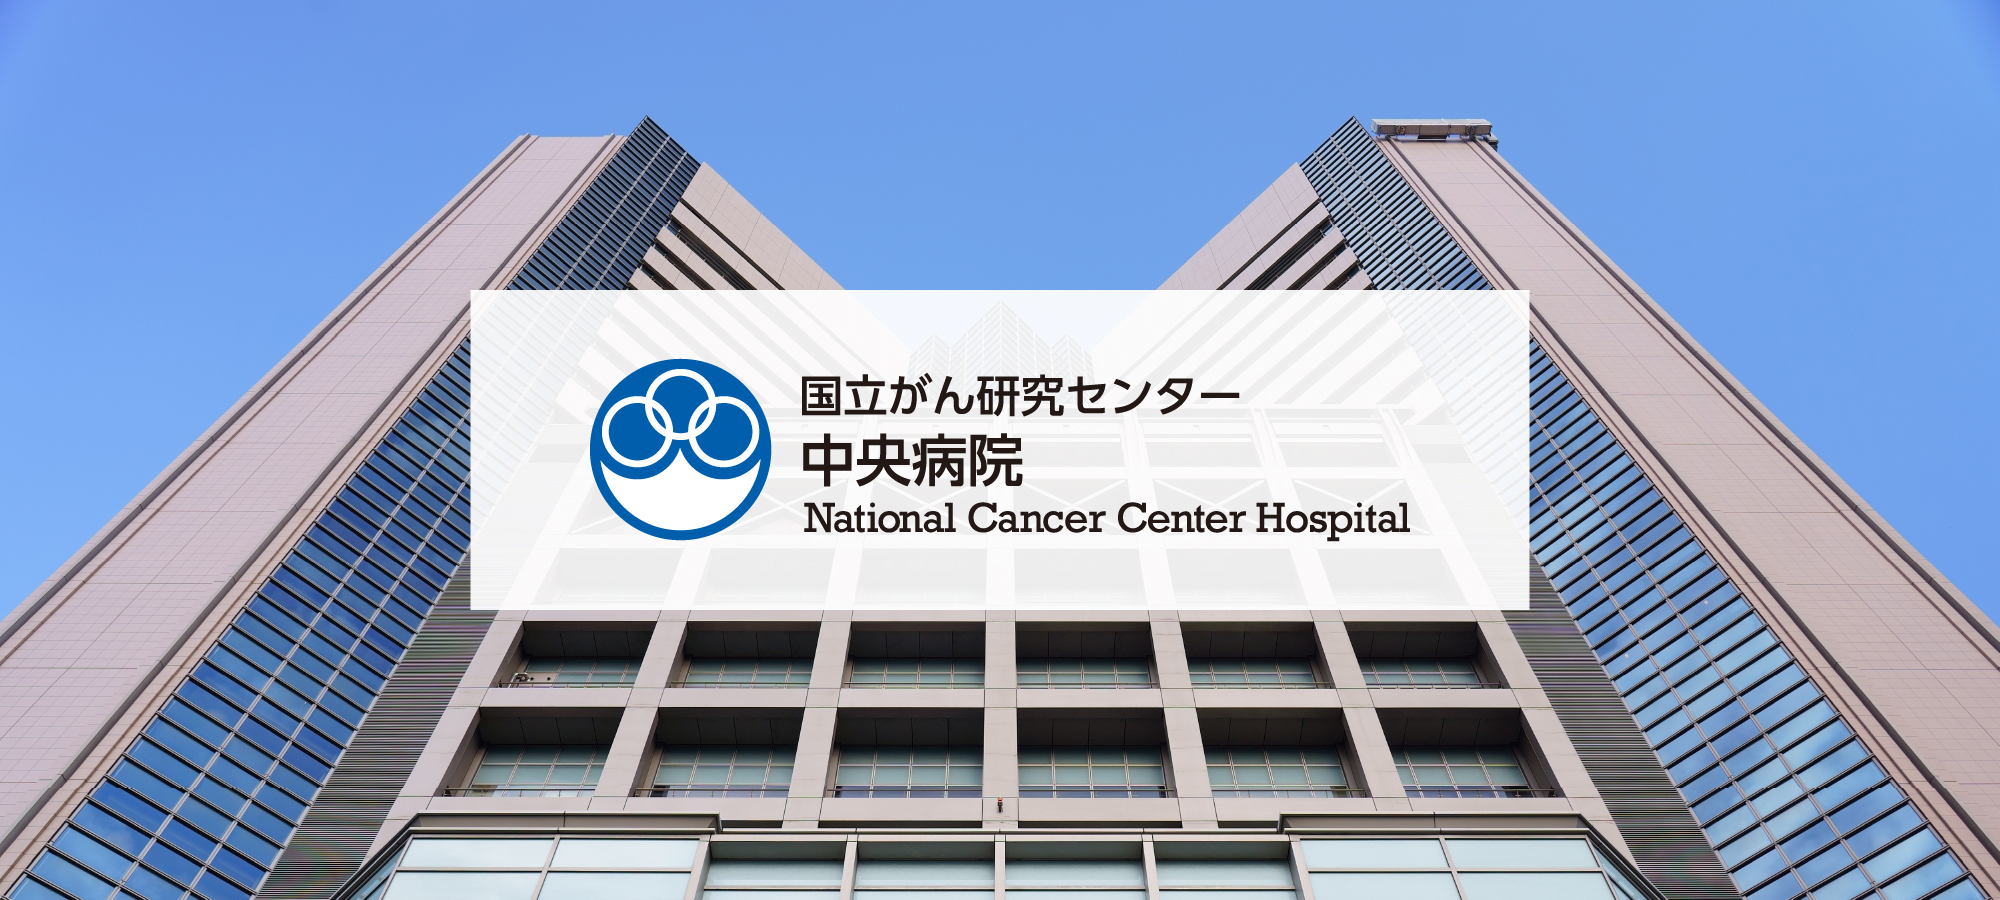 国立がん研究センター中央病院 National Cancer Center Hospital